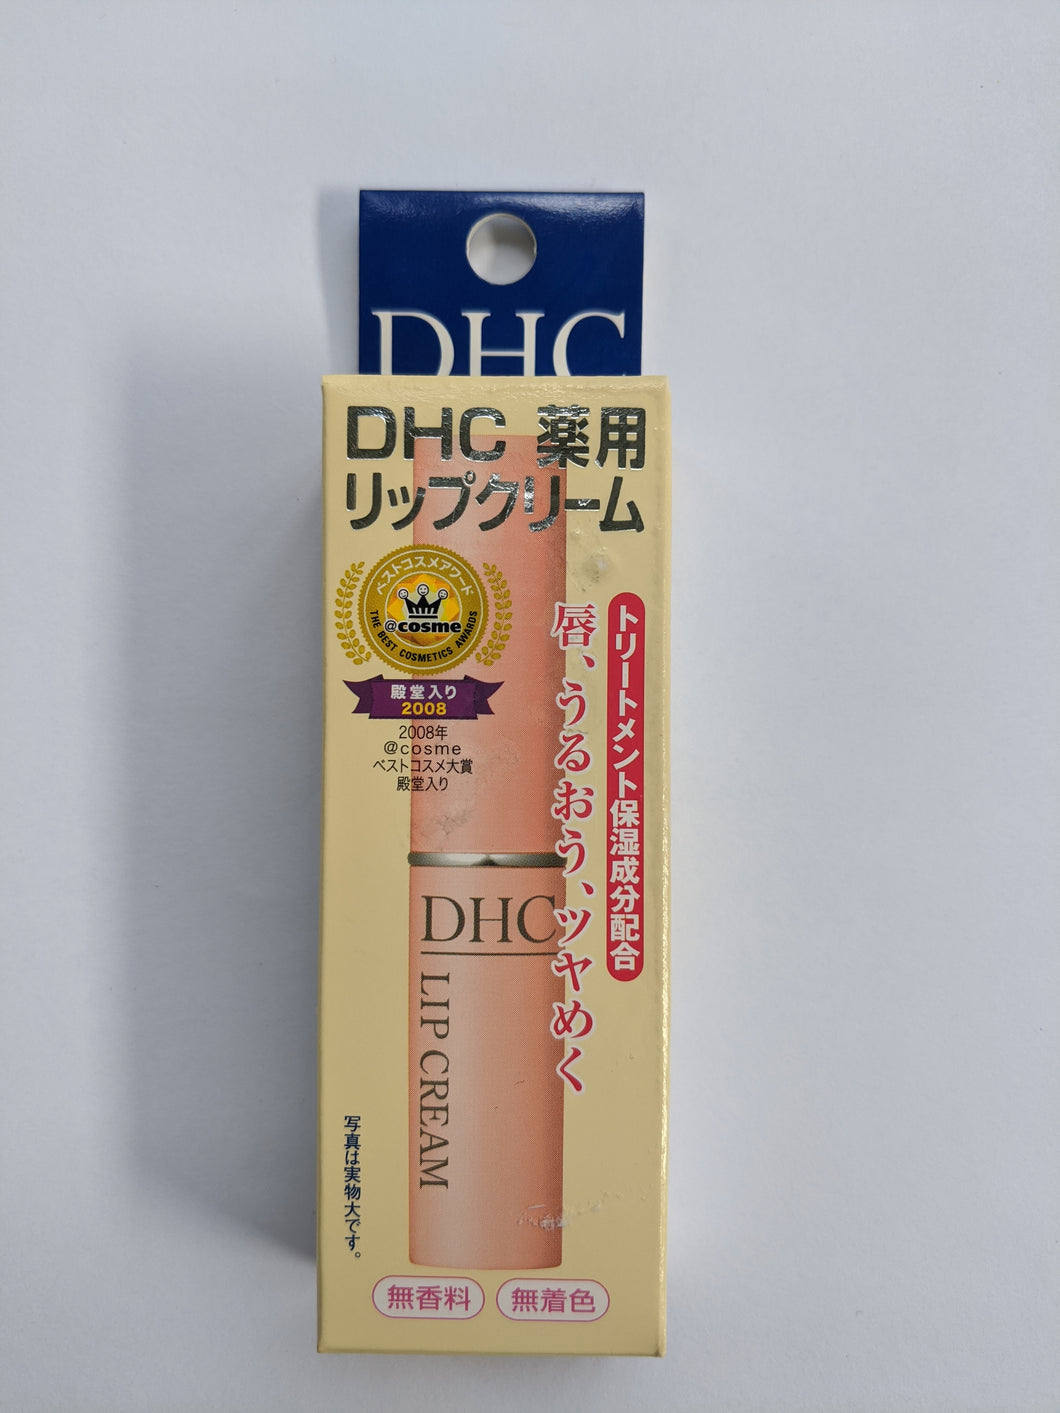 DHC - Lip cream